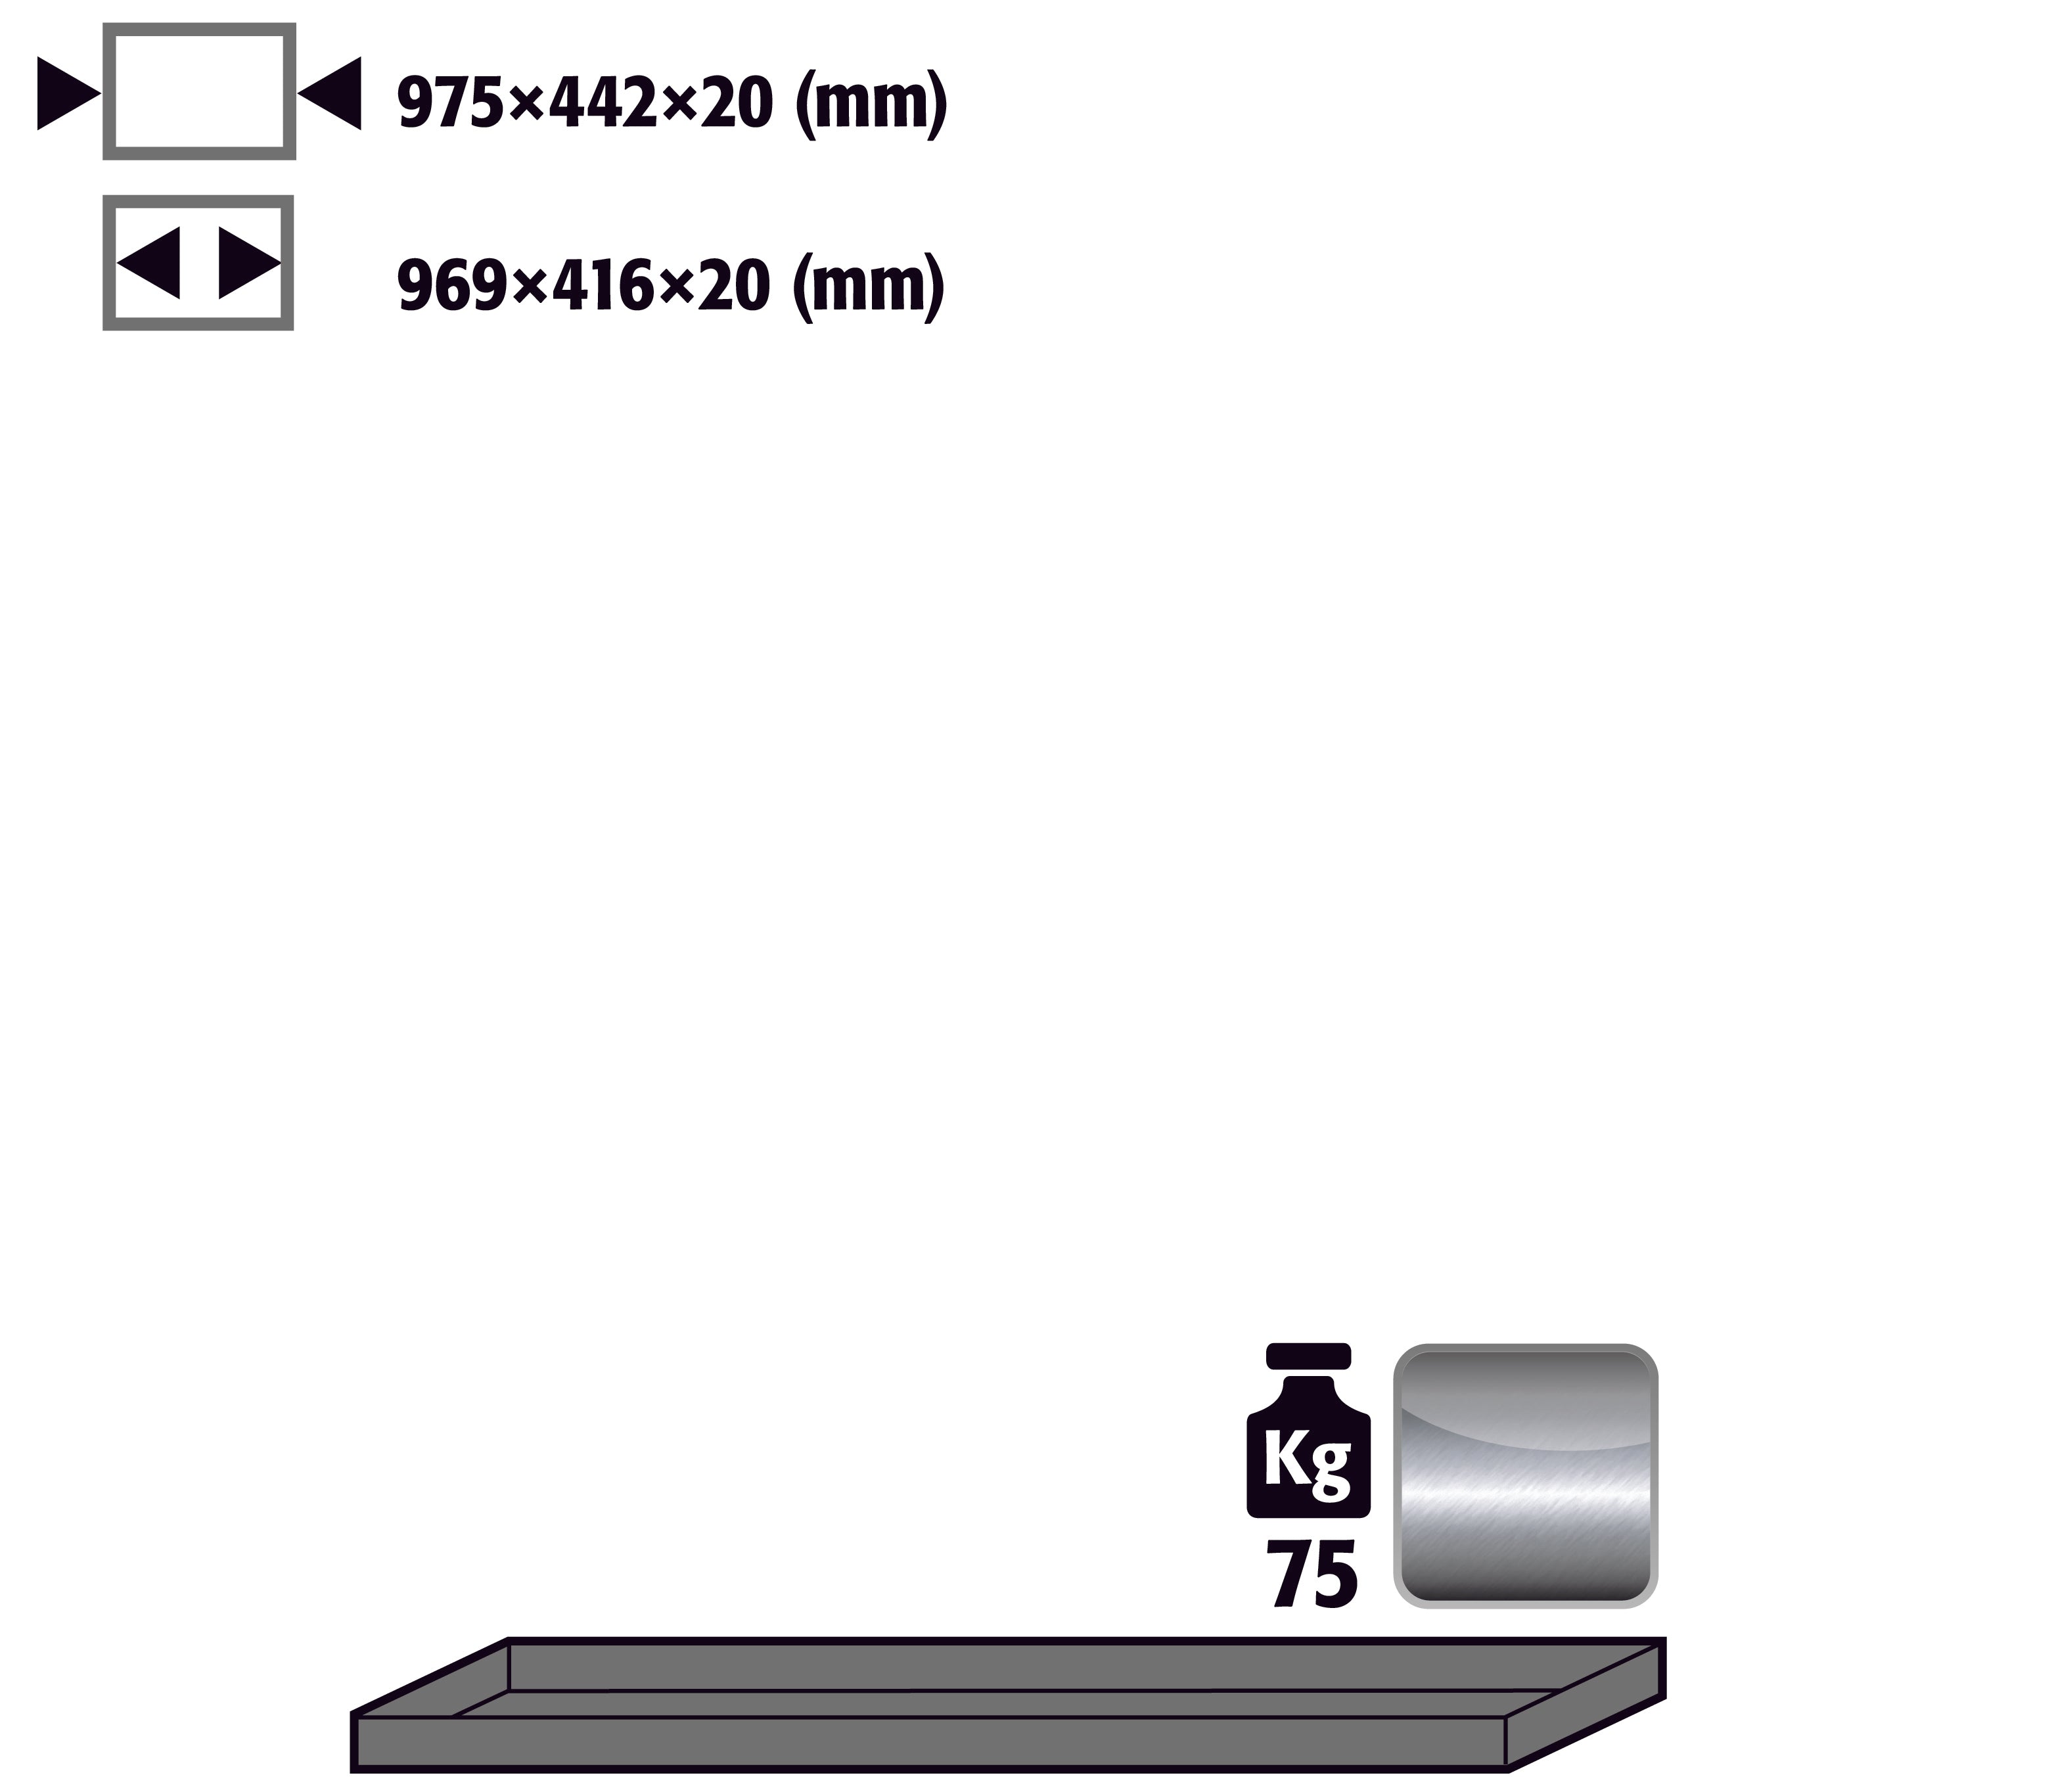 Fachboden Standard für Modell(e): UB90, UB30 mit Breite 1100 mm, Edelstahl 1.4301 roh